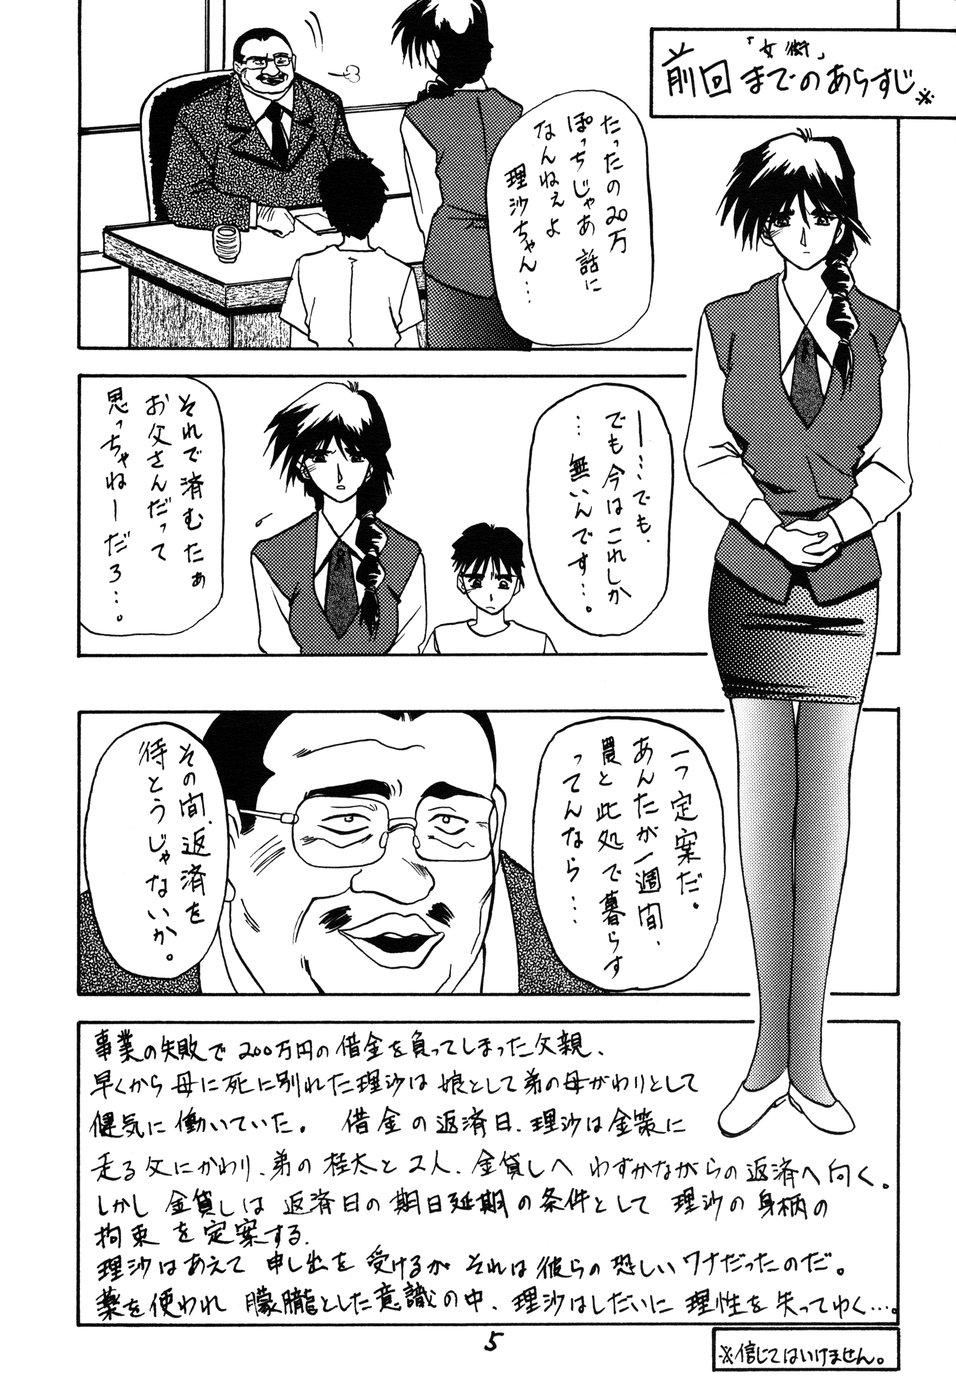 Olderwoman Yamakoshou Hunks - Page 5